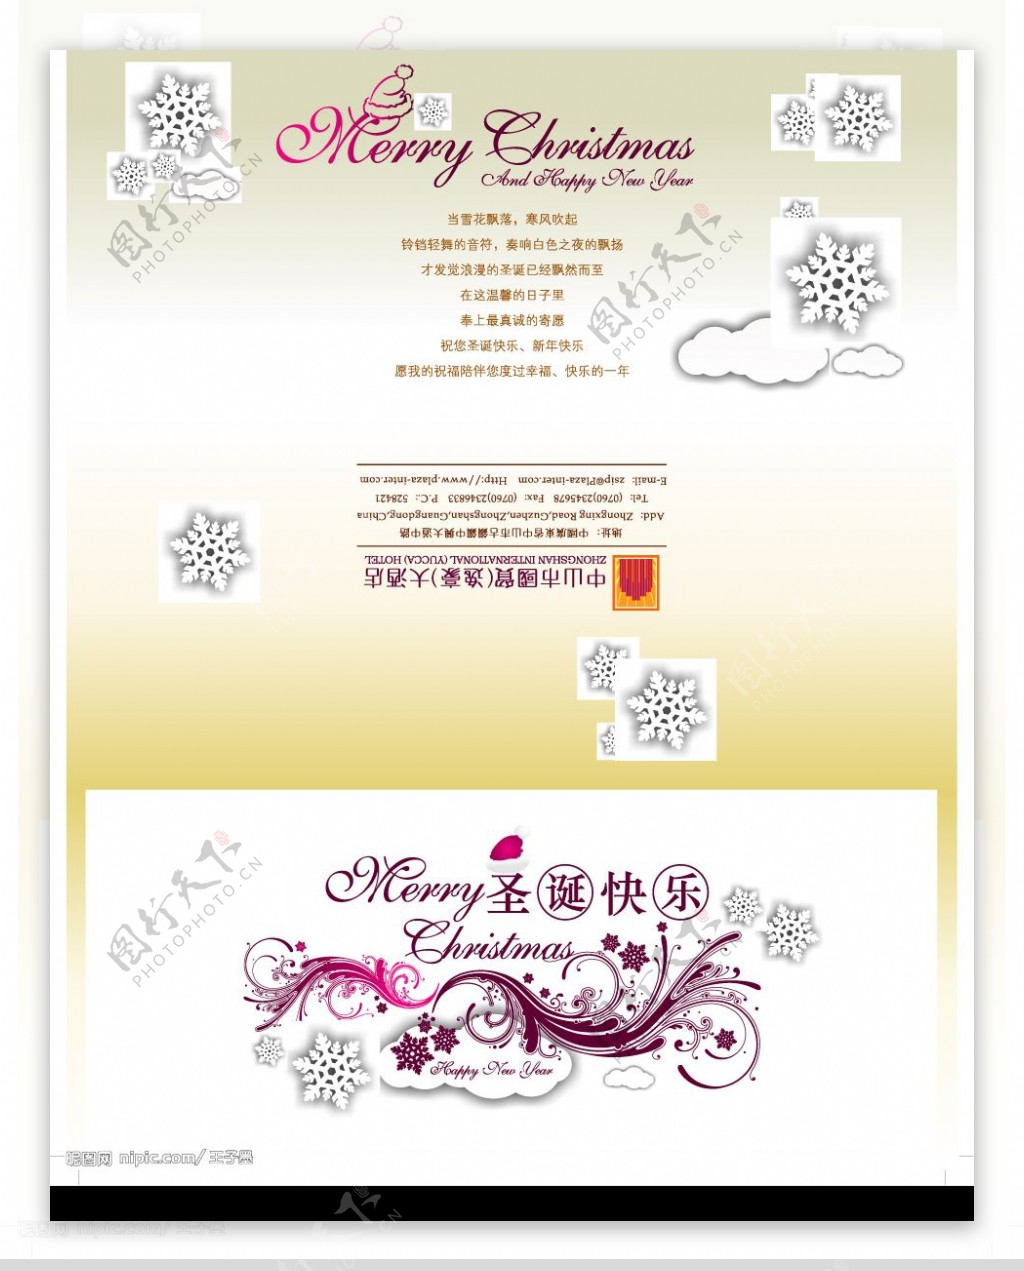 酒店圣诞节宣传折页图片